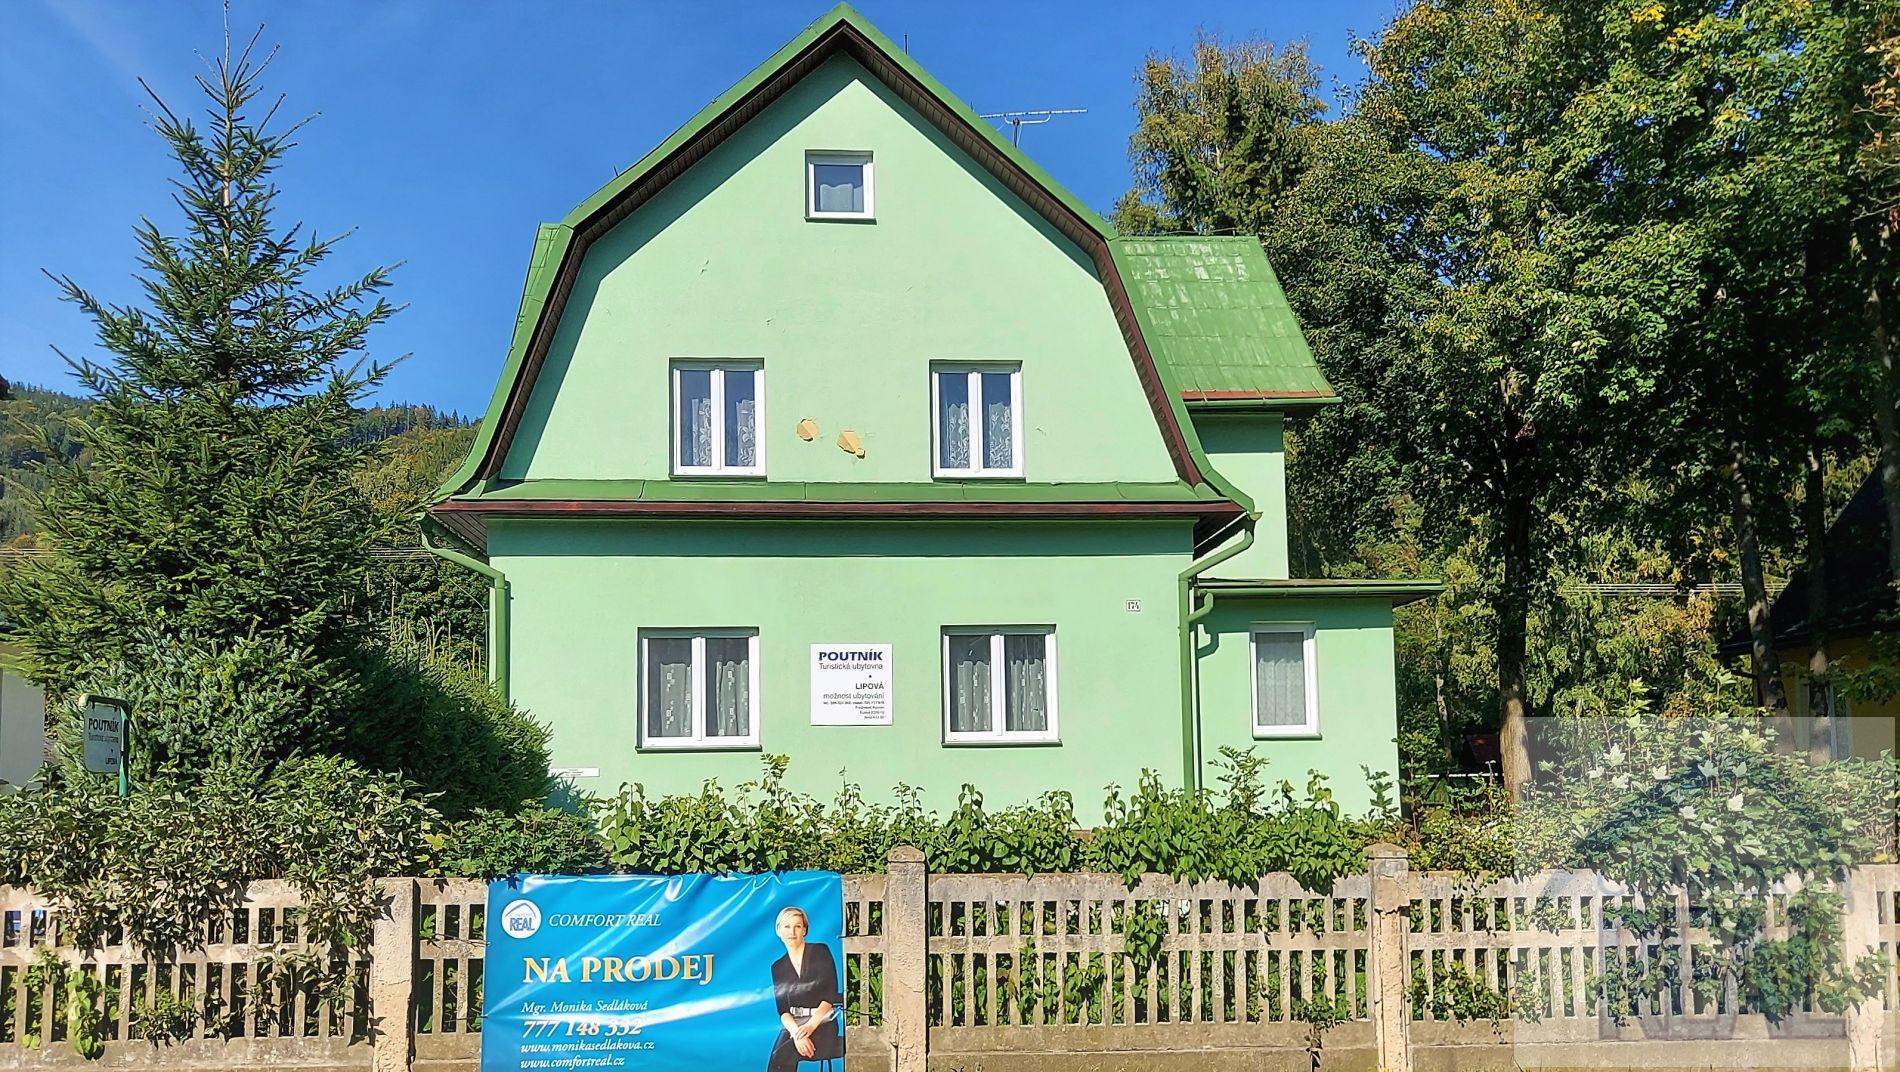 Prodej ubytovacího zařízení  POUTNÍK č.ev. 24, centrum obce Lipová  Lázně.